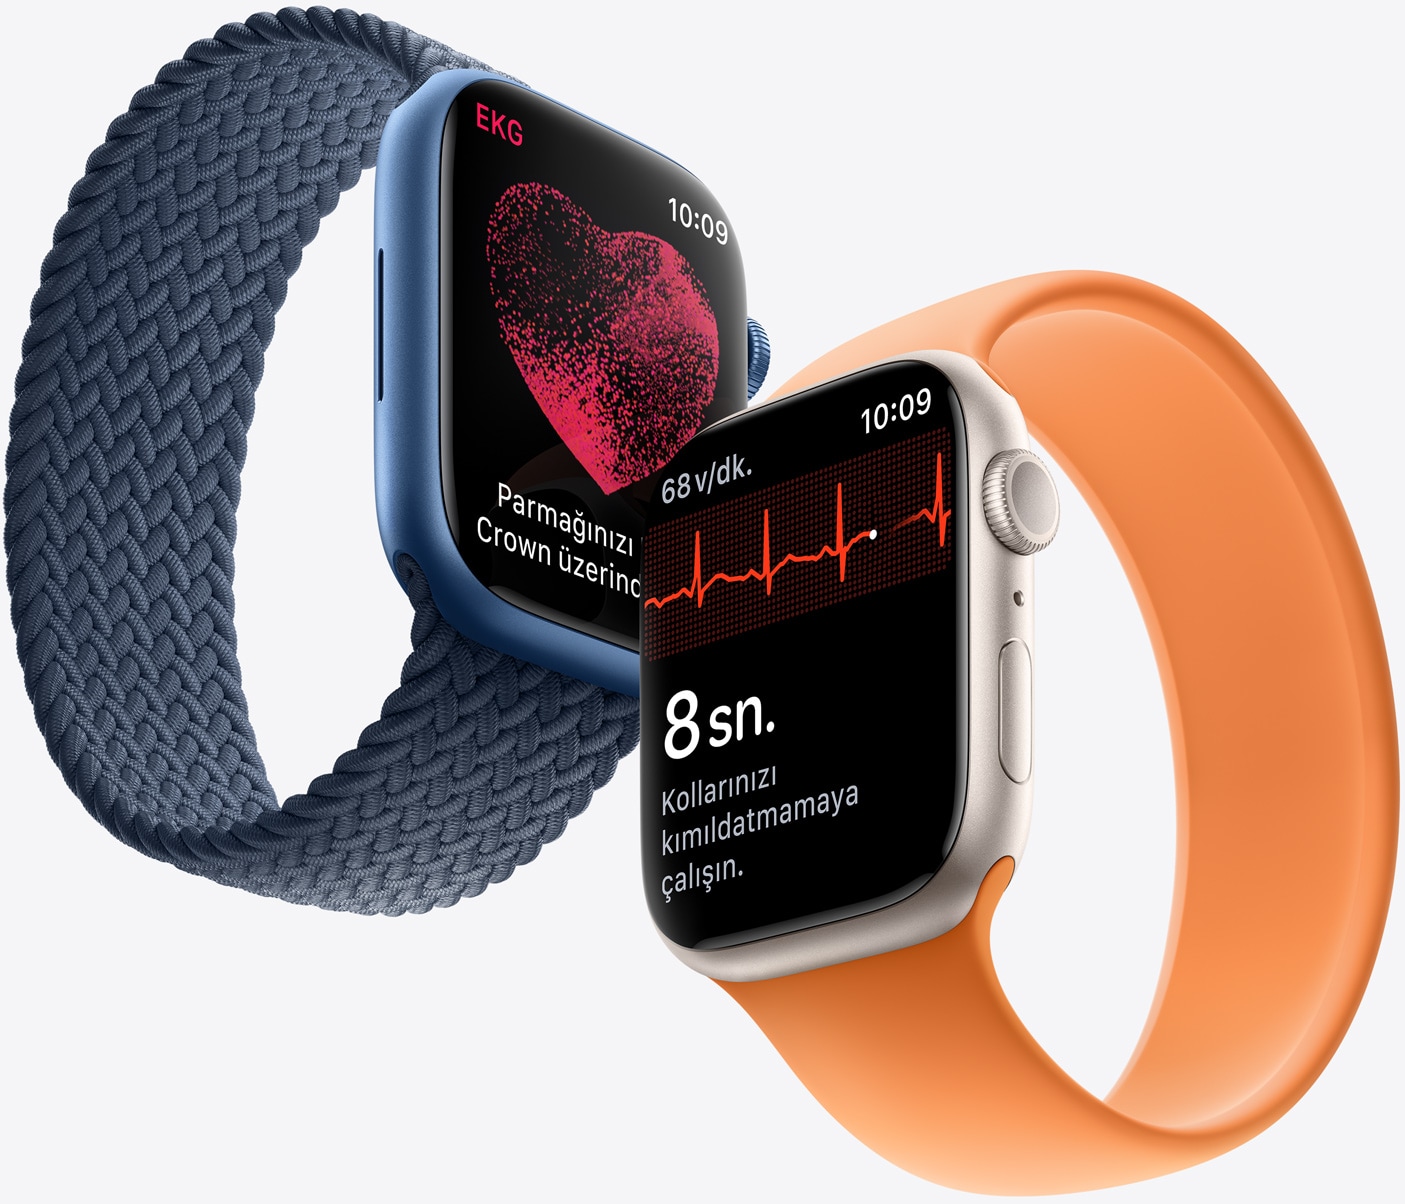 EKG çekin. Ne zaman isterseniz.  EKG uygulaması sayesinde Apple Watch Series 7 tek derivasyonlu elektrokardiyografiye benzer EKG sonuçları sunabiliyor. Bu, giyilebilir teknoloji alanında çok önemli bir başarı. Çünkü bu sayede doktorlar kritik verileri görebiliyor, sizin de içiniz rahat ediyor.